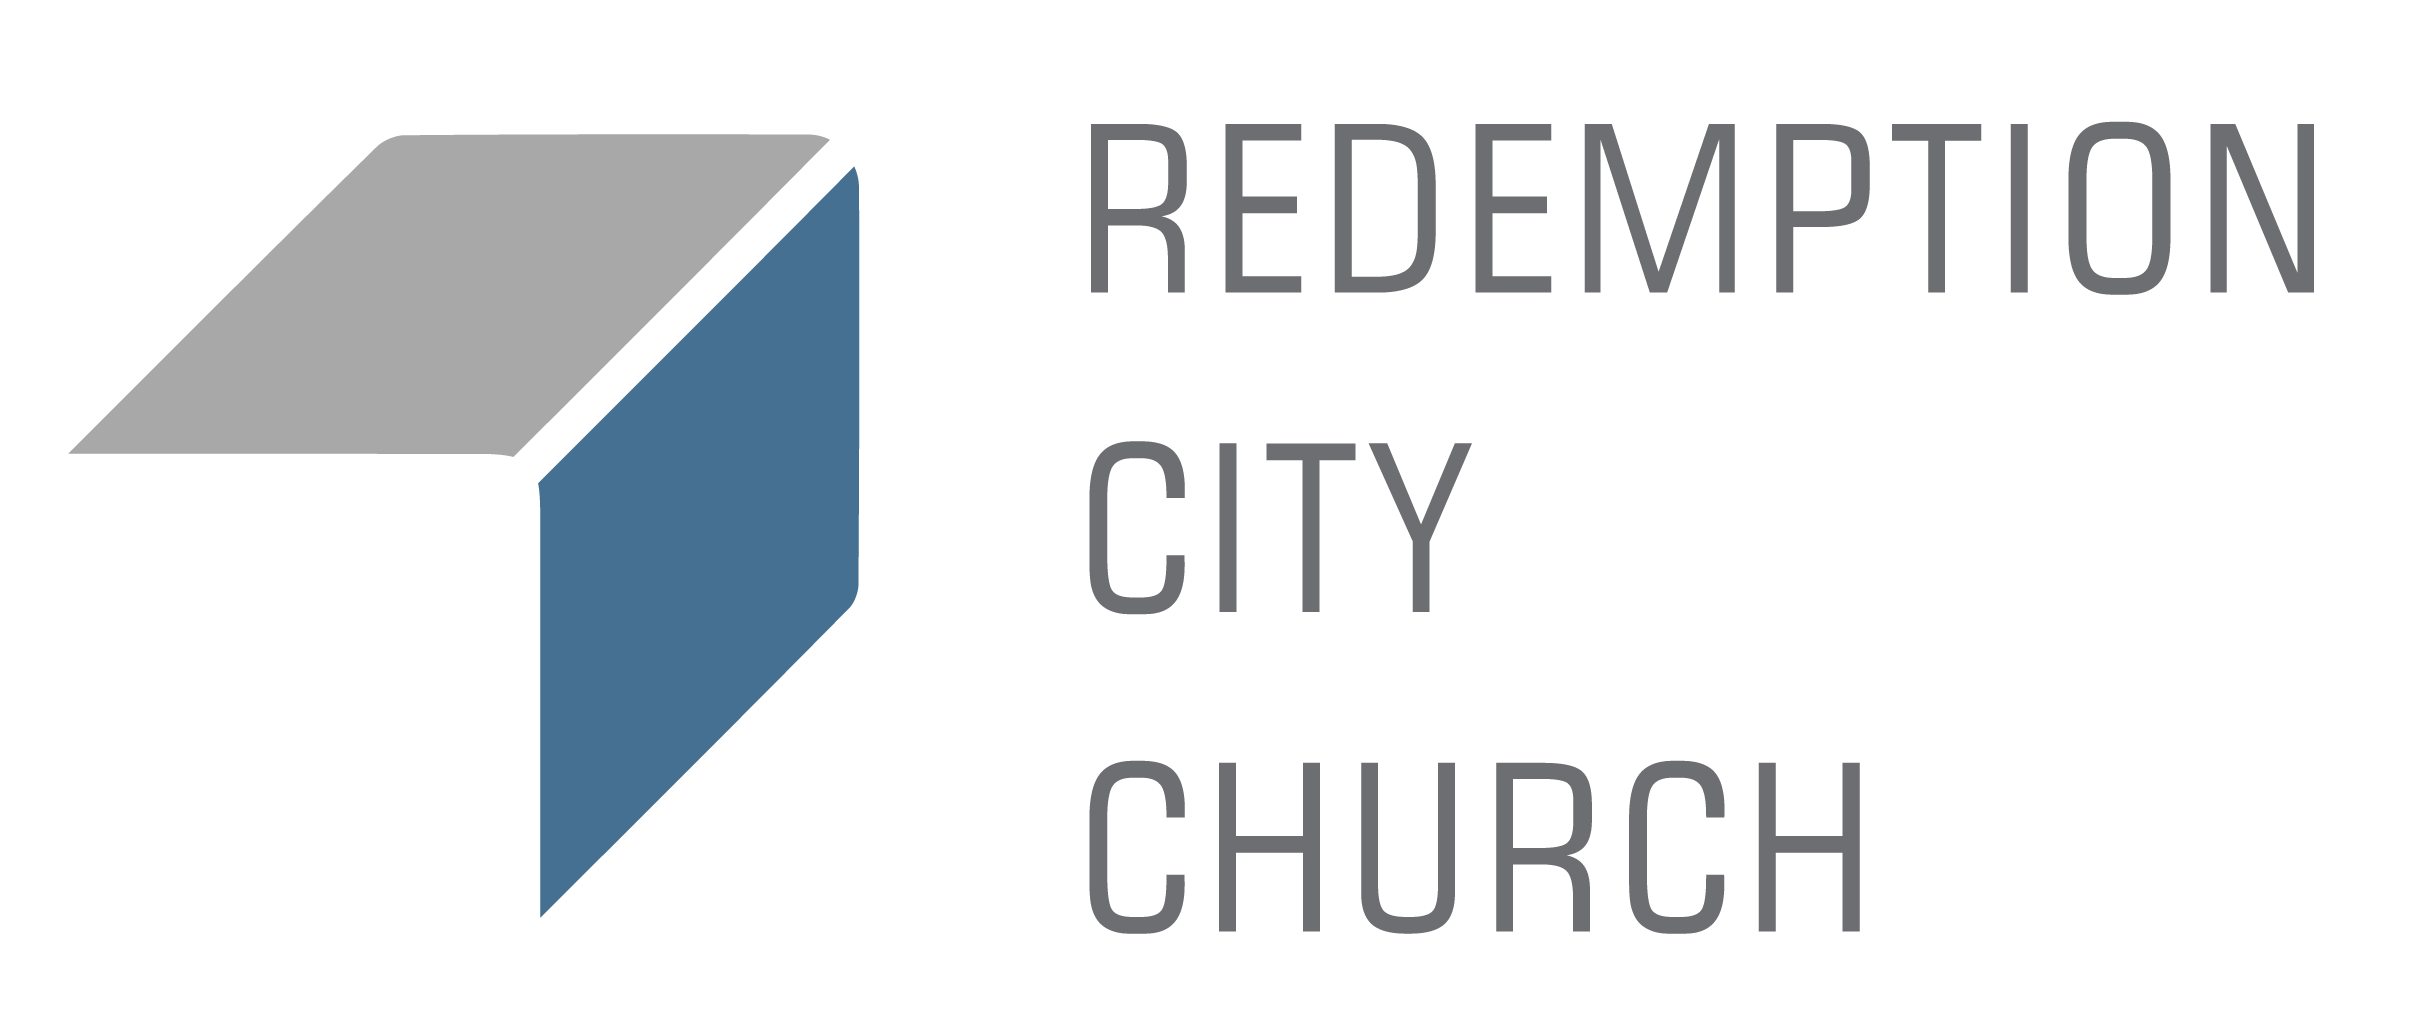 Redemption City Church 